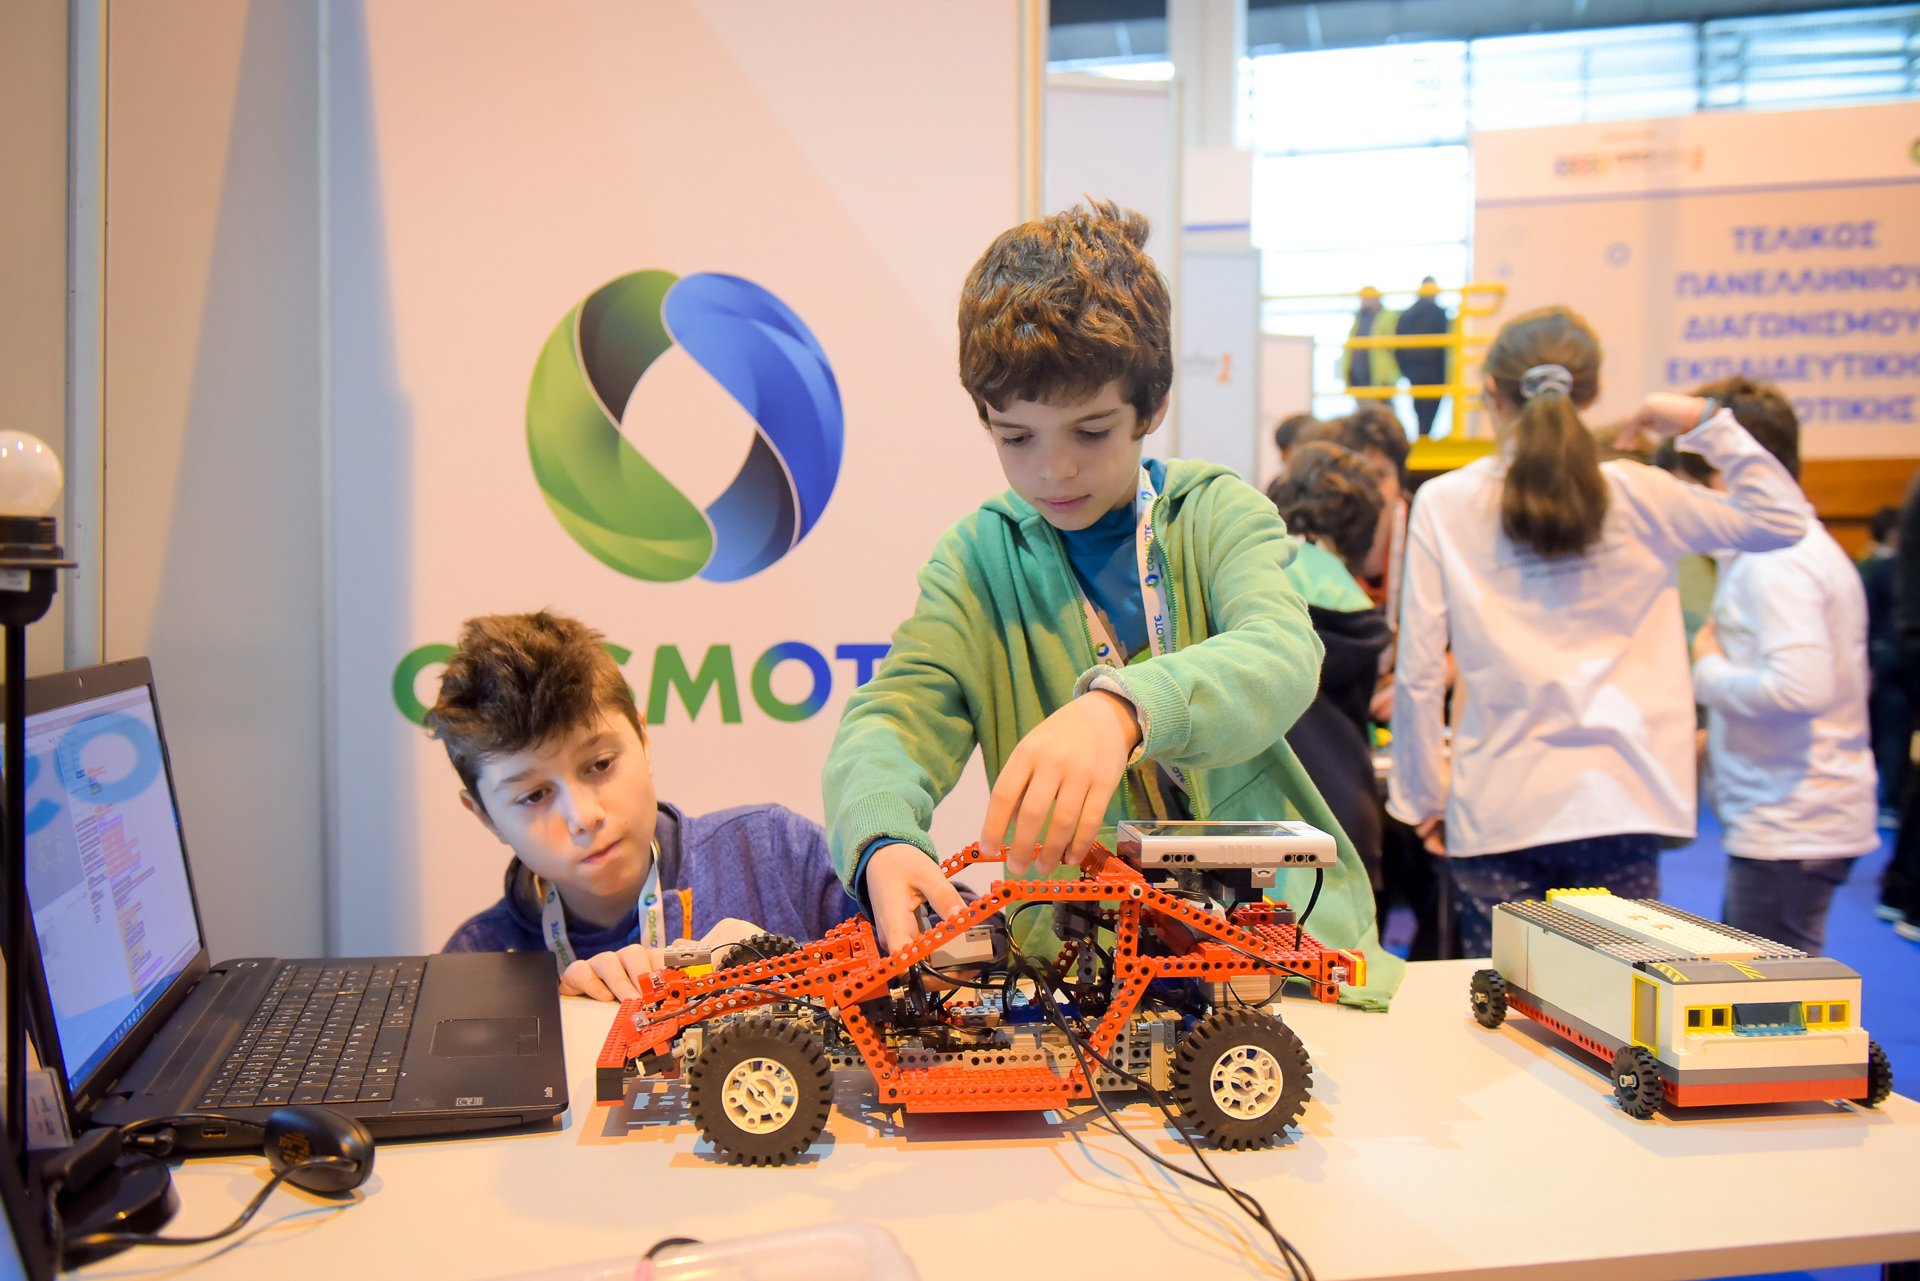 Σήμερα φτιάχνουν ρομπότ, αύριο τον κόσμο όλο: Οι μαθητές που κέρδισαν στο Πανελλήνιο Διαγωνισμό Εκπαιδευτικής Ρομποτικής - Στρατηγικός συνεργάτης η COSMOTE